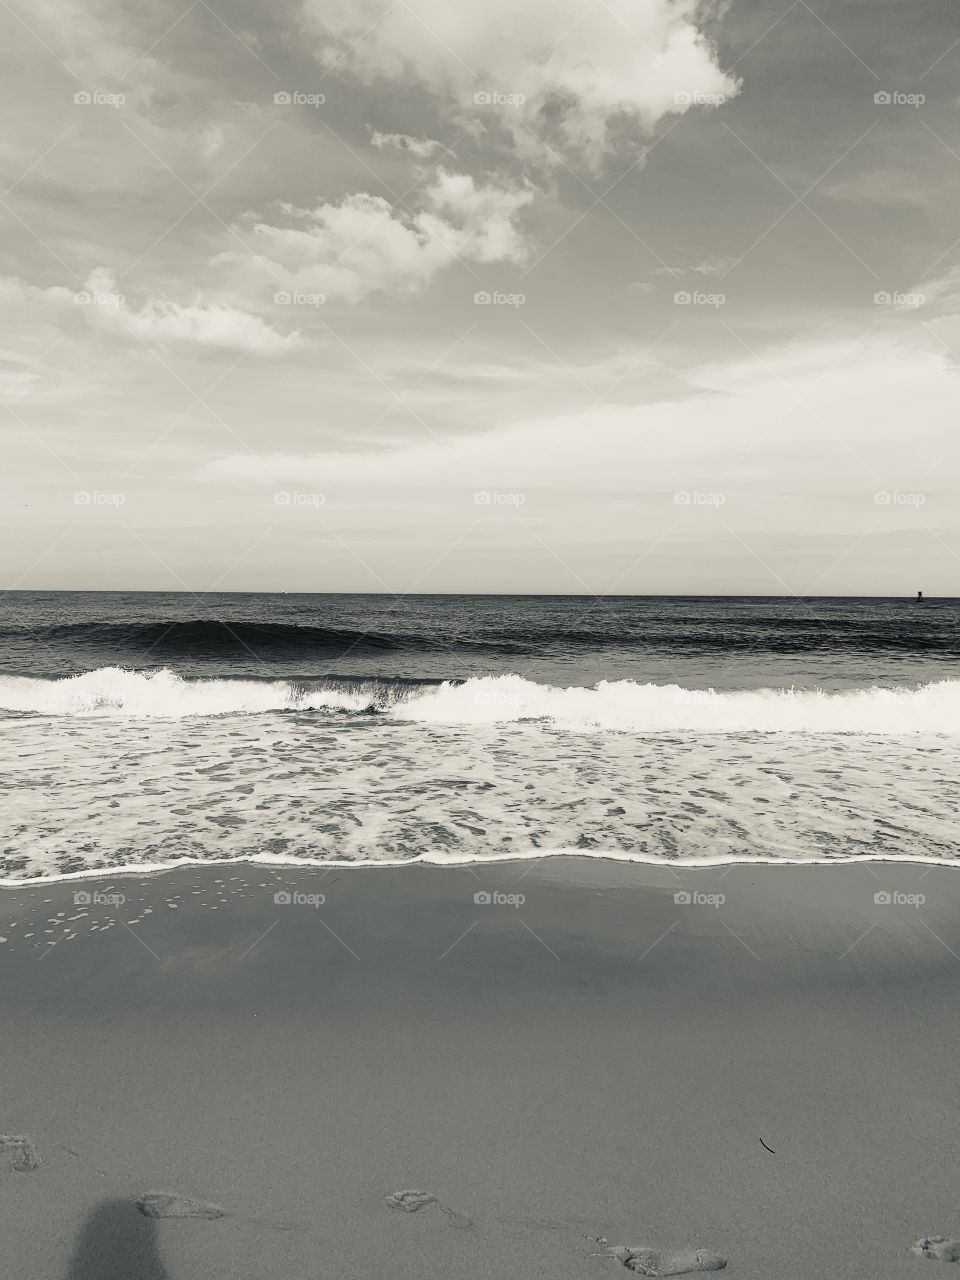 Waves crashing